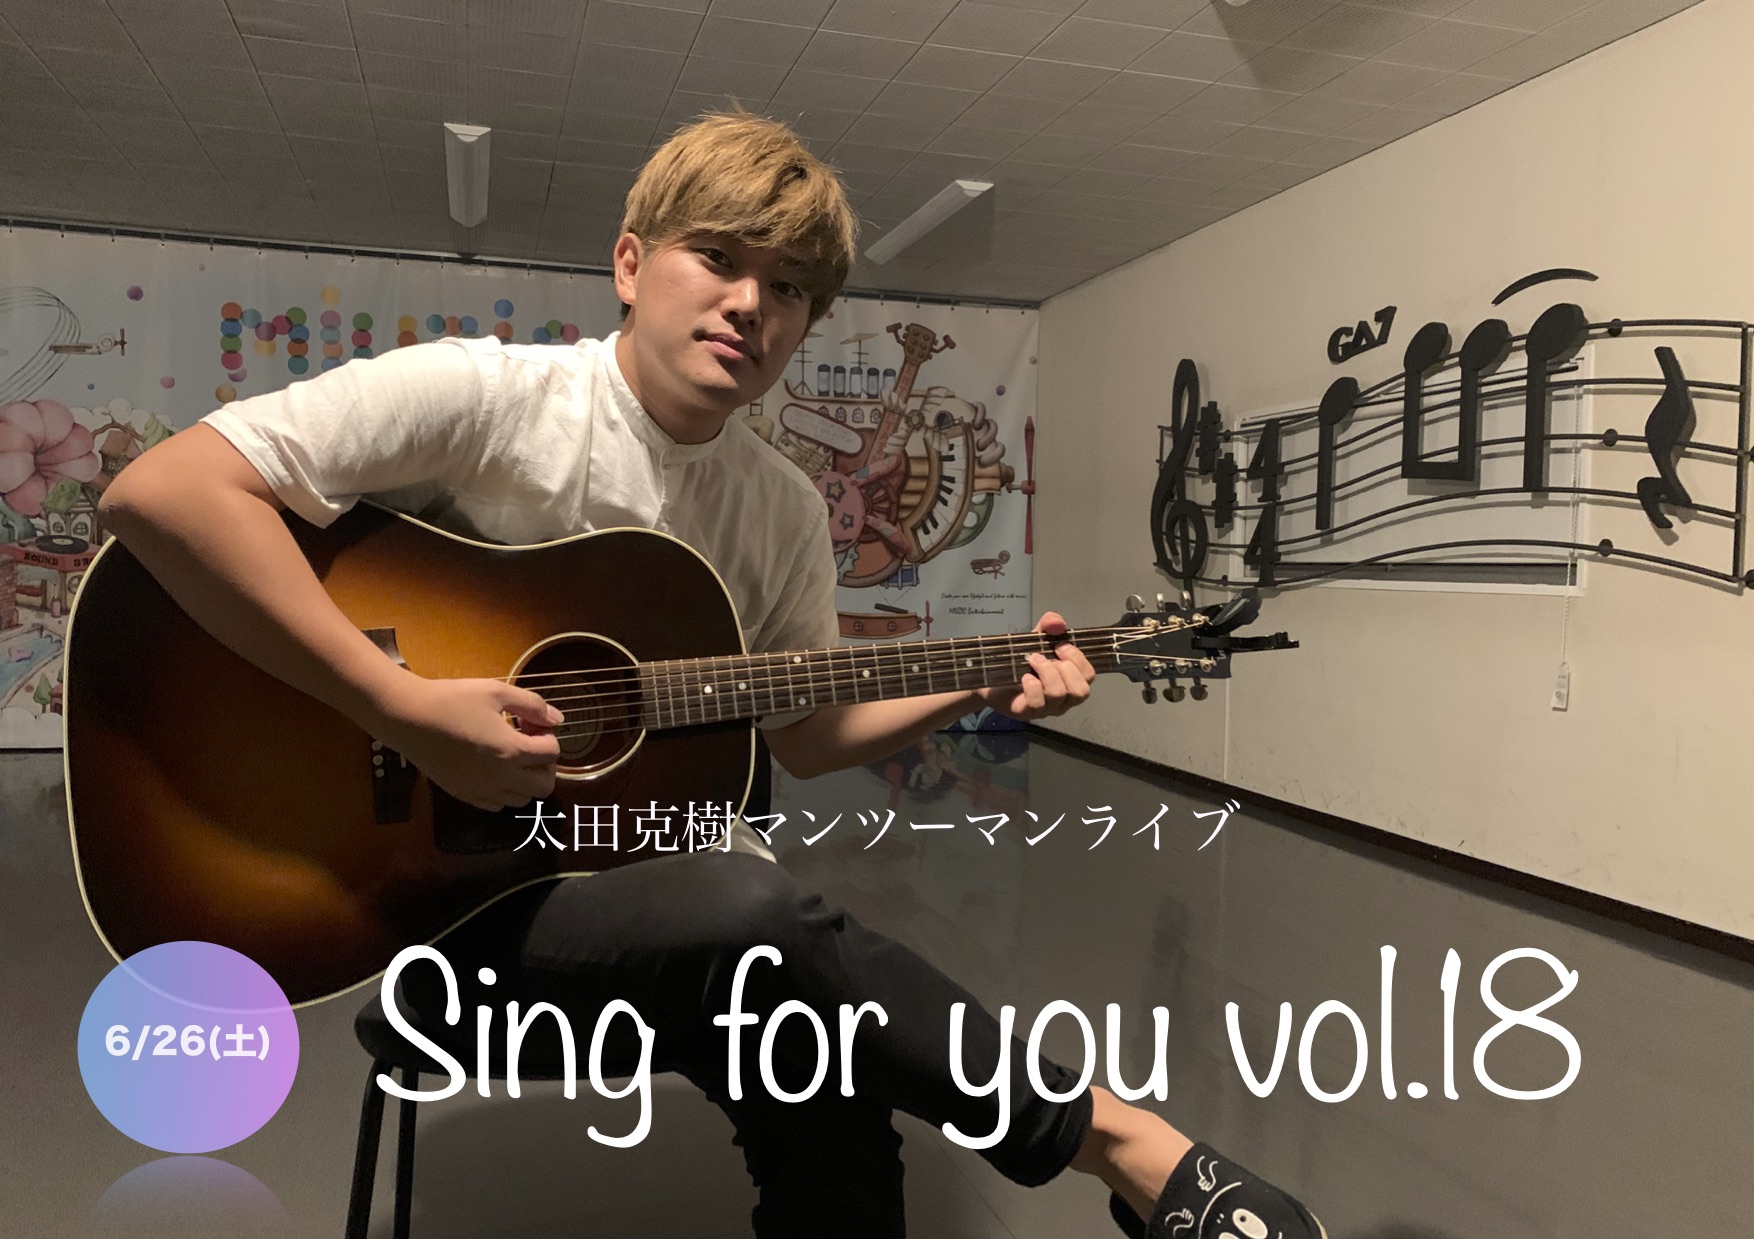 【太田克樹】6/26 (土)マンツーマンライブ「Sing for you vol.18」